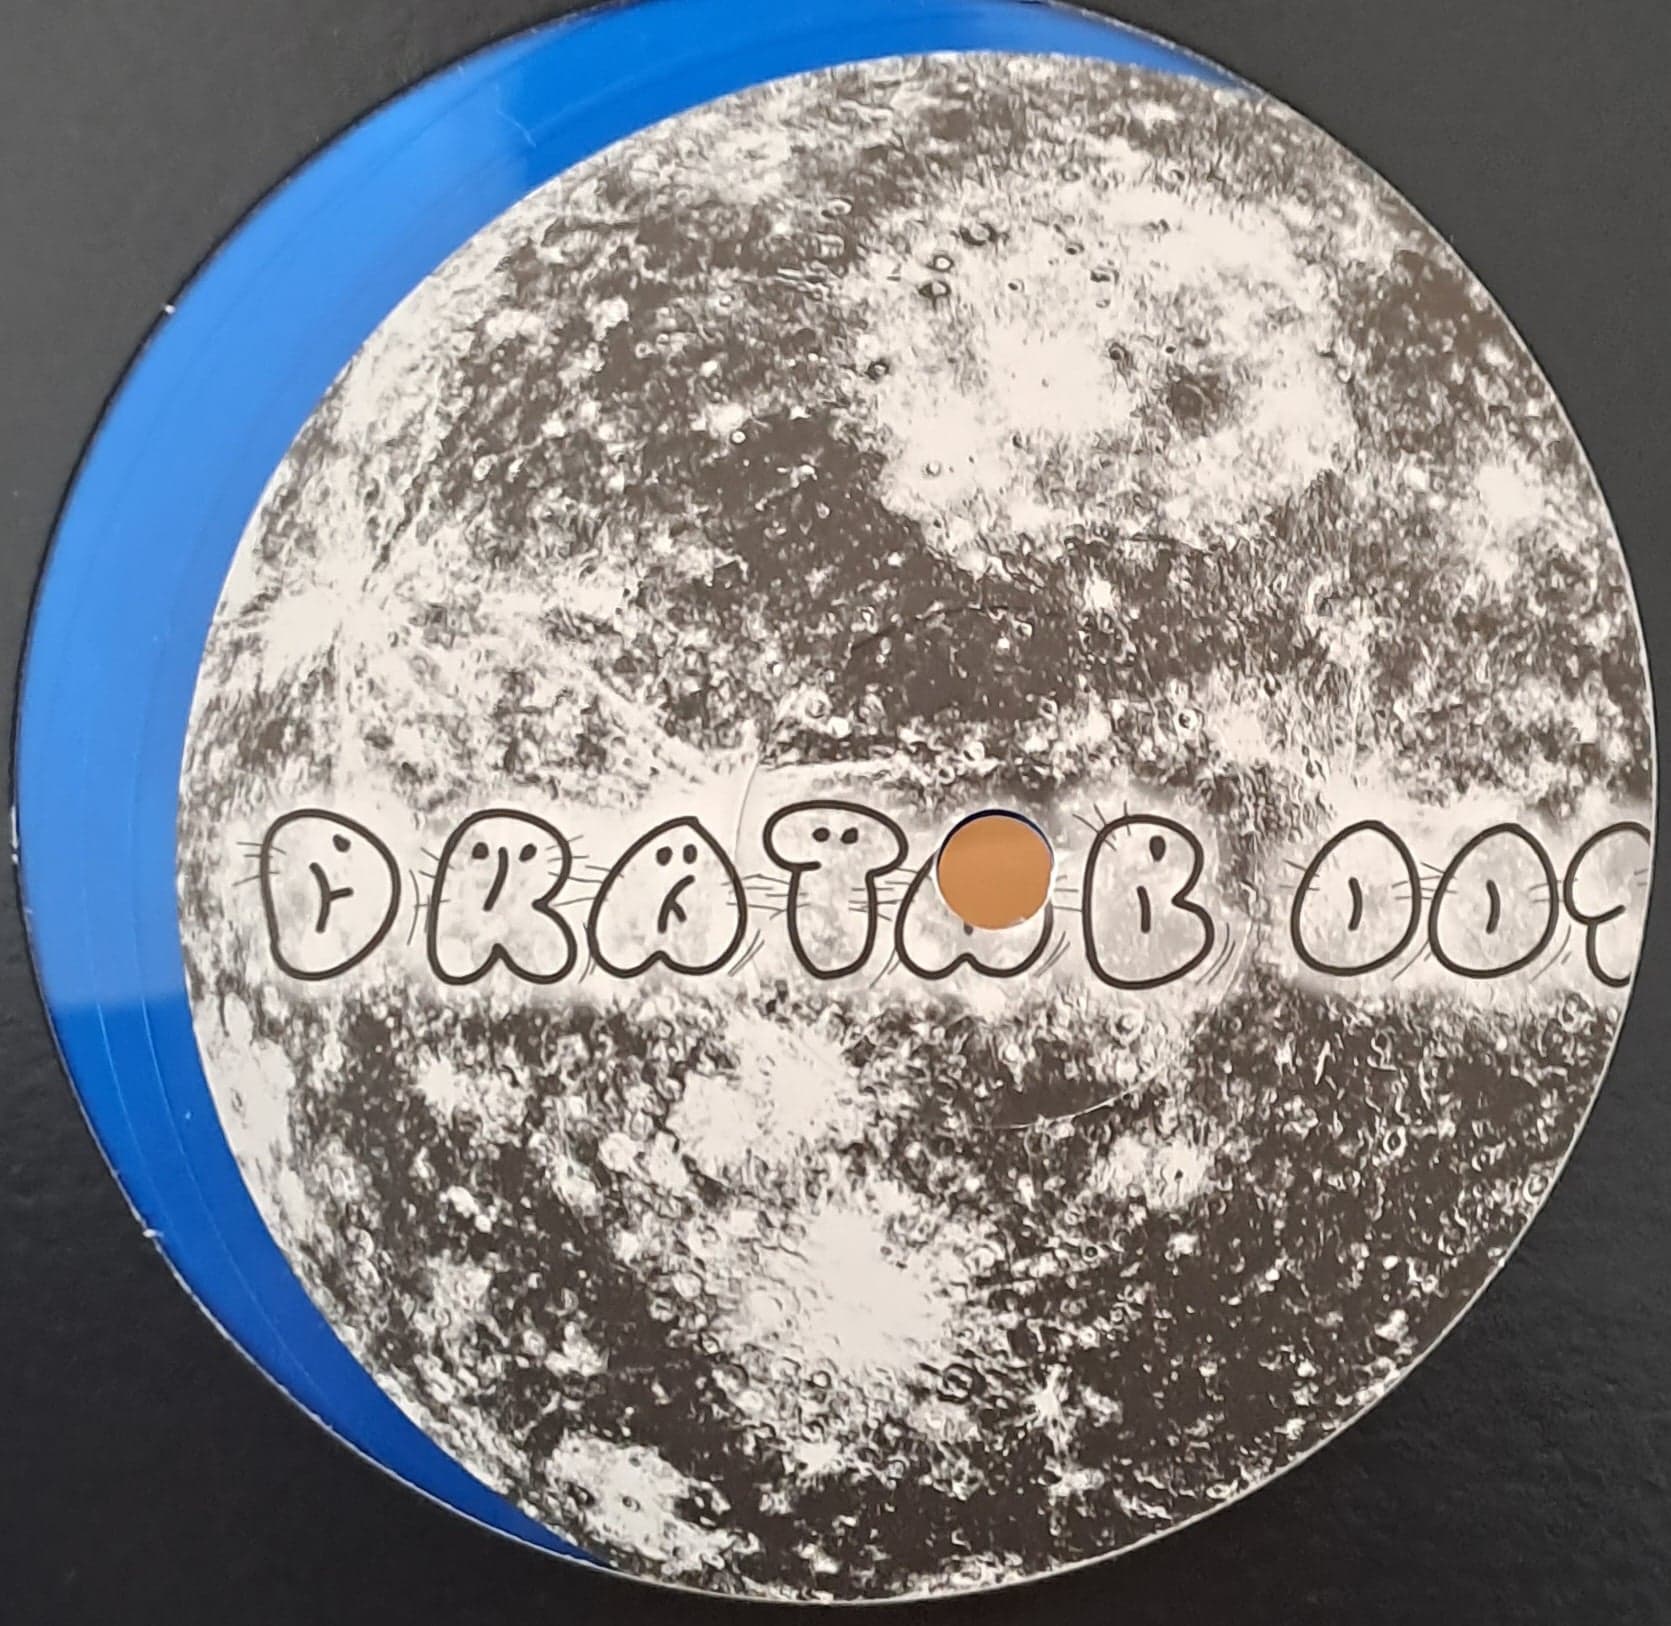 Dratab 01 - vinyle tribecore